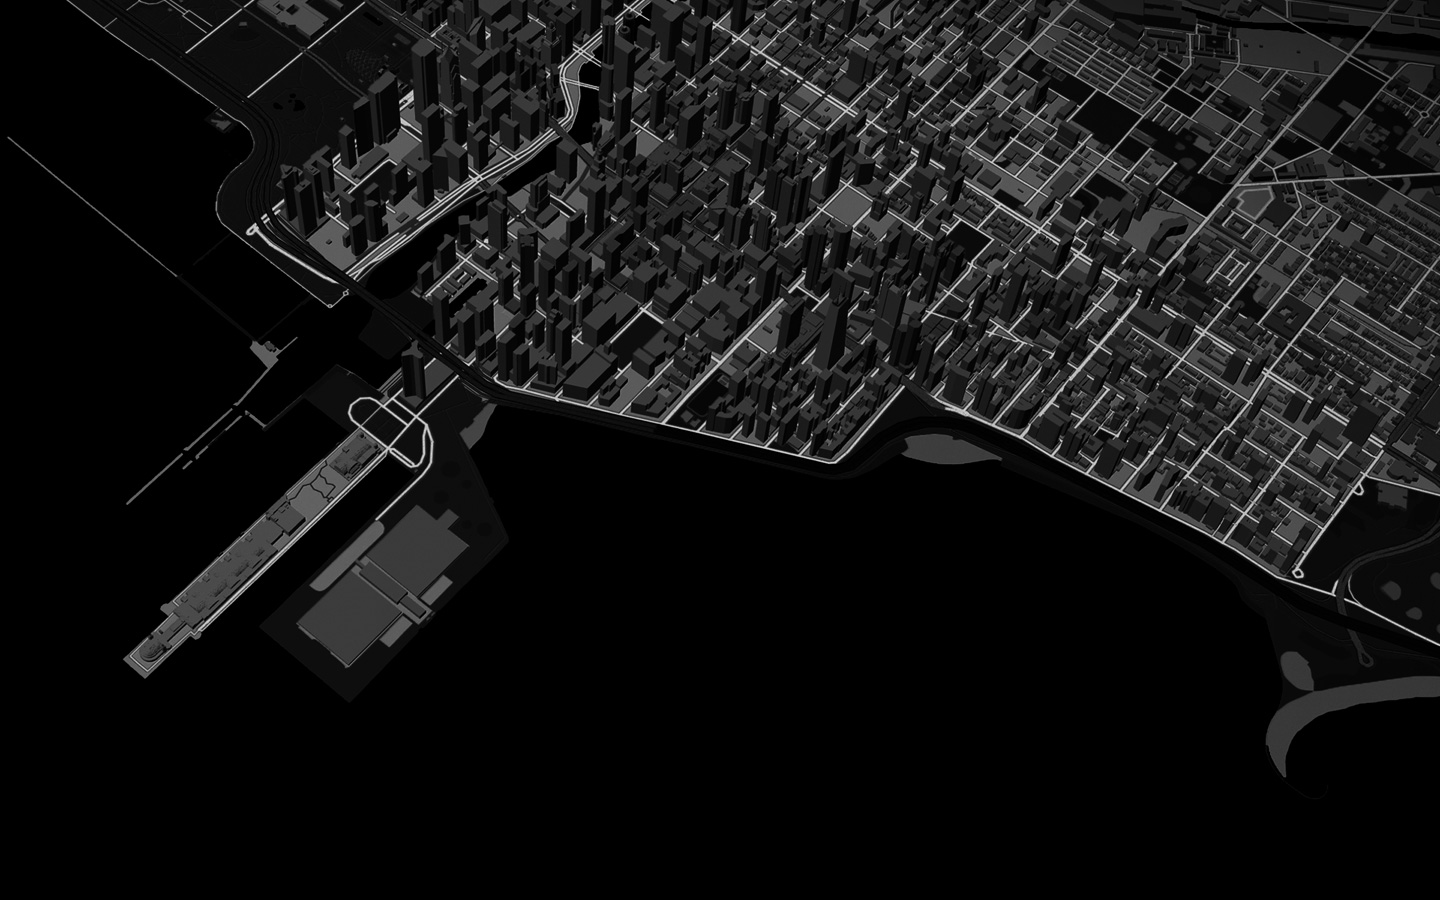 動畫展示城市景觀的 3D 地圖顯示中，跑者穿梭城市的路線圖